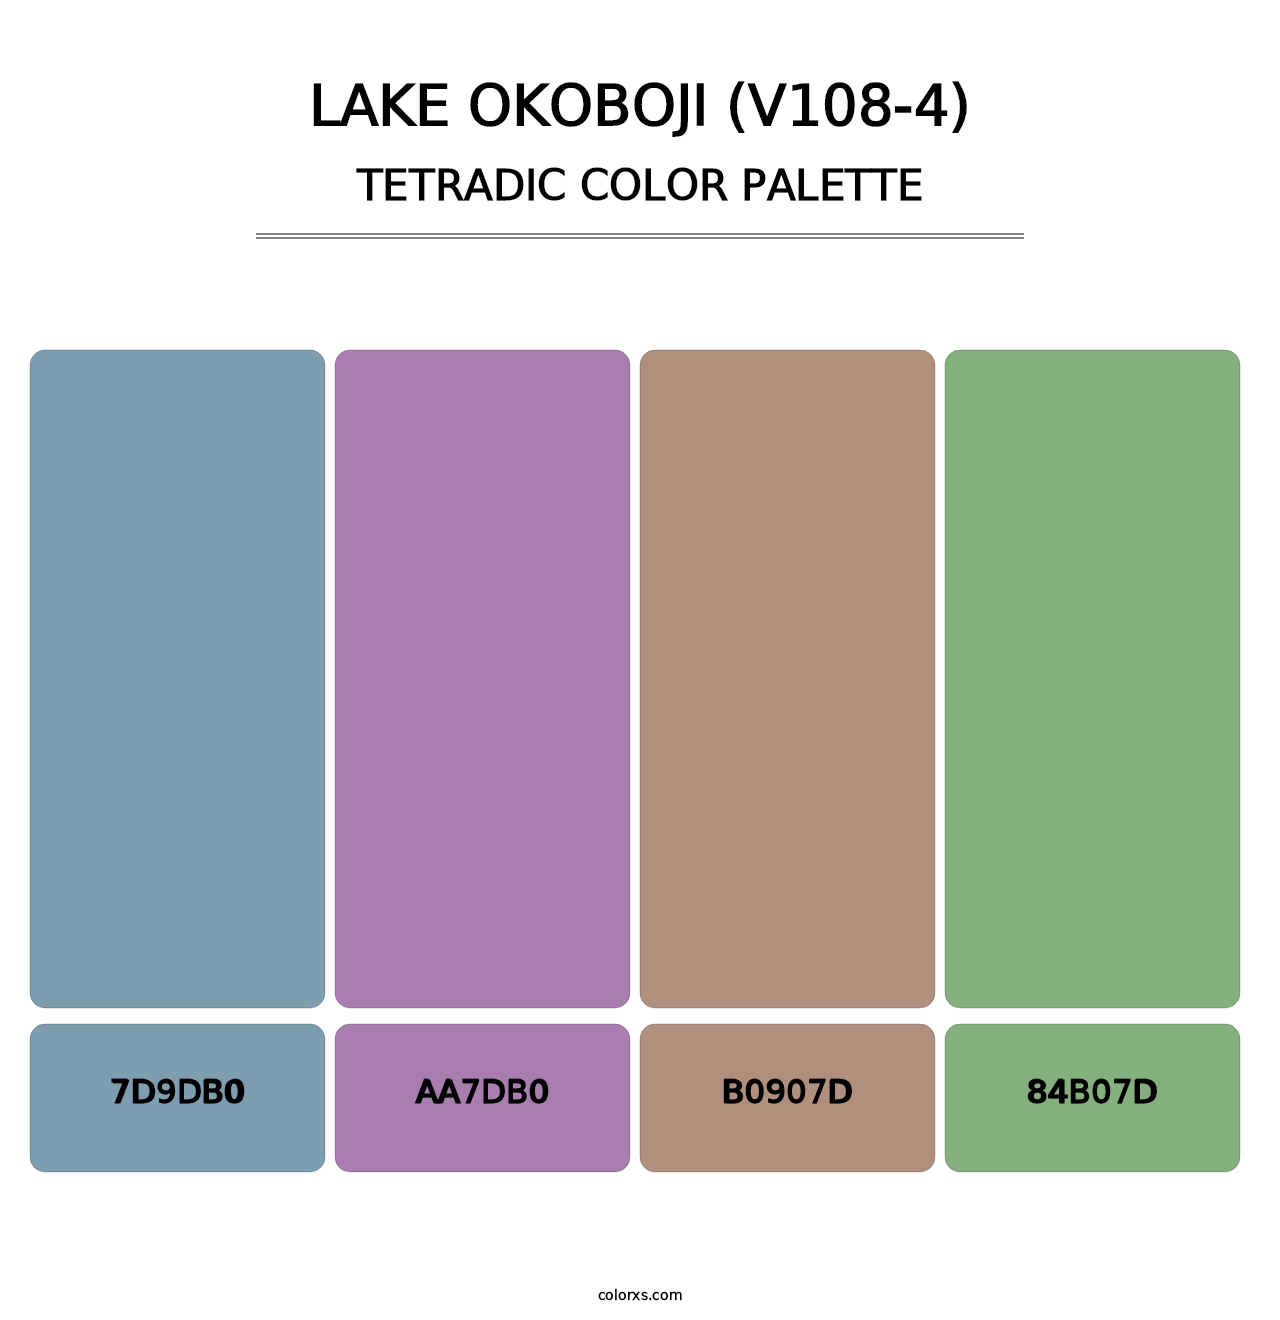 Lake Okoboji (V108-4) - Tetradic Color Palette